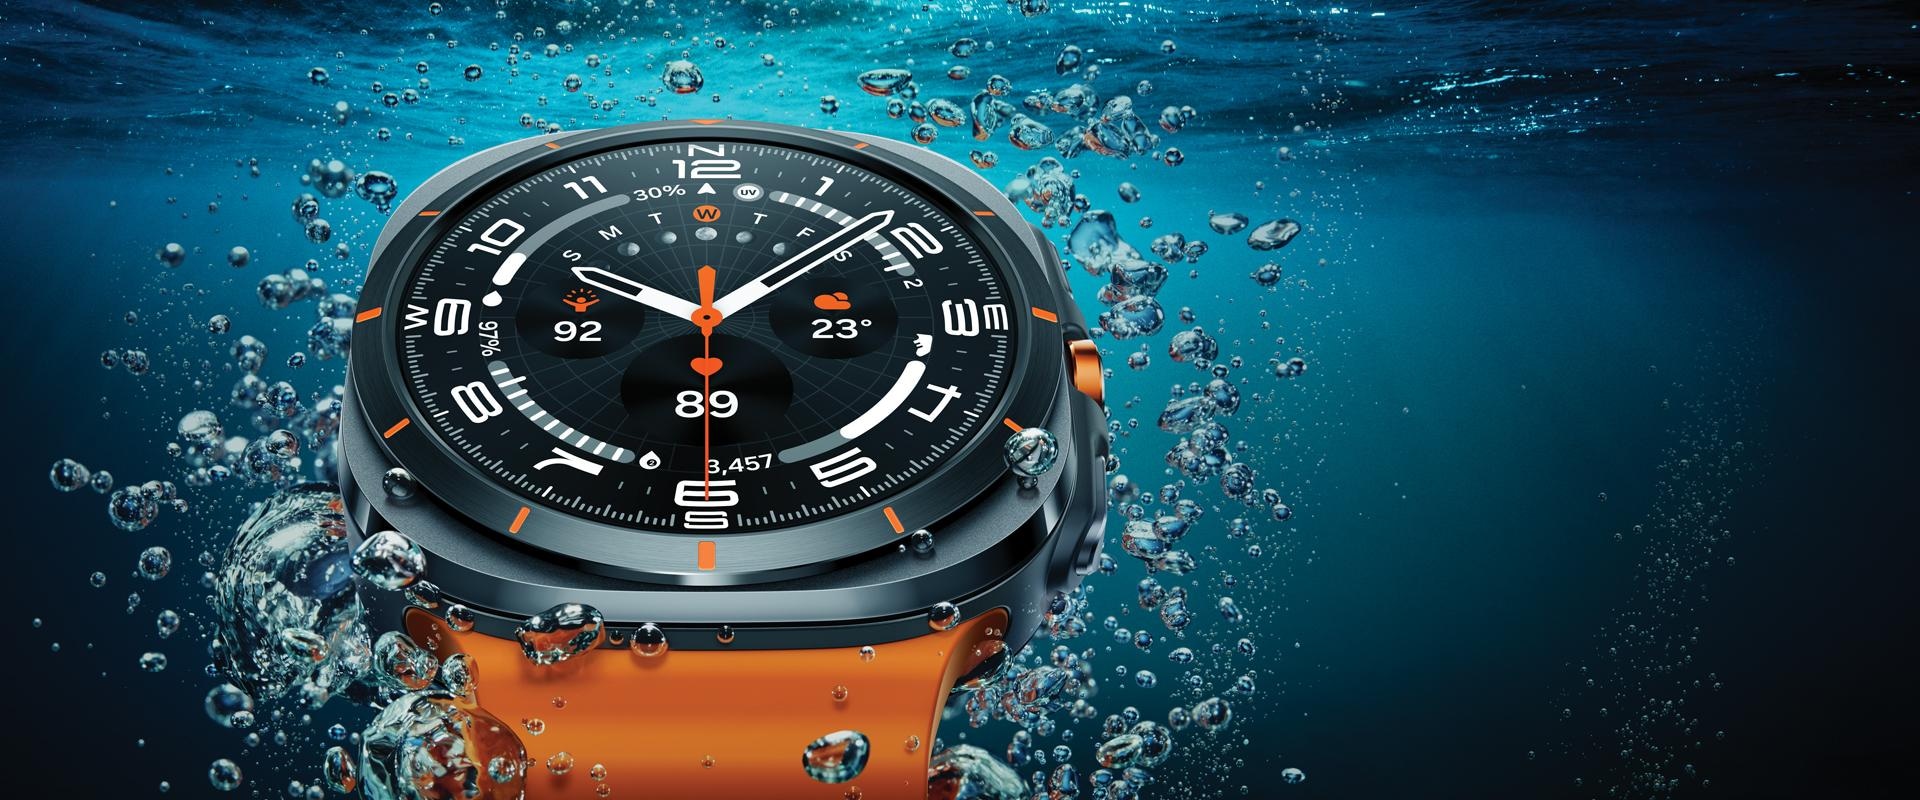 Великий план годинника Galaxy Watch Ultra під водою, неподалік від поверхні, щоб можна було роздивитися його дизайн.